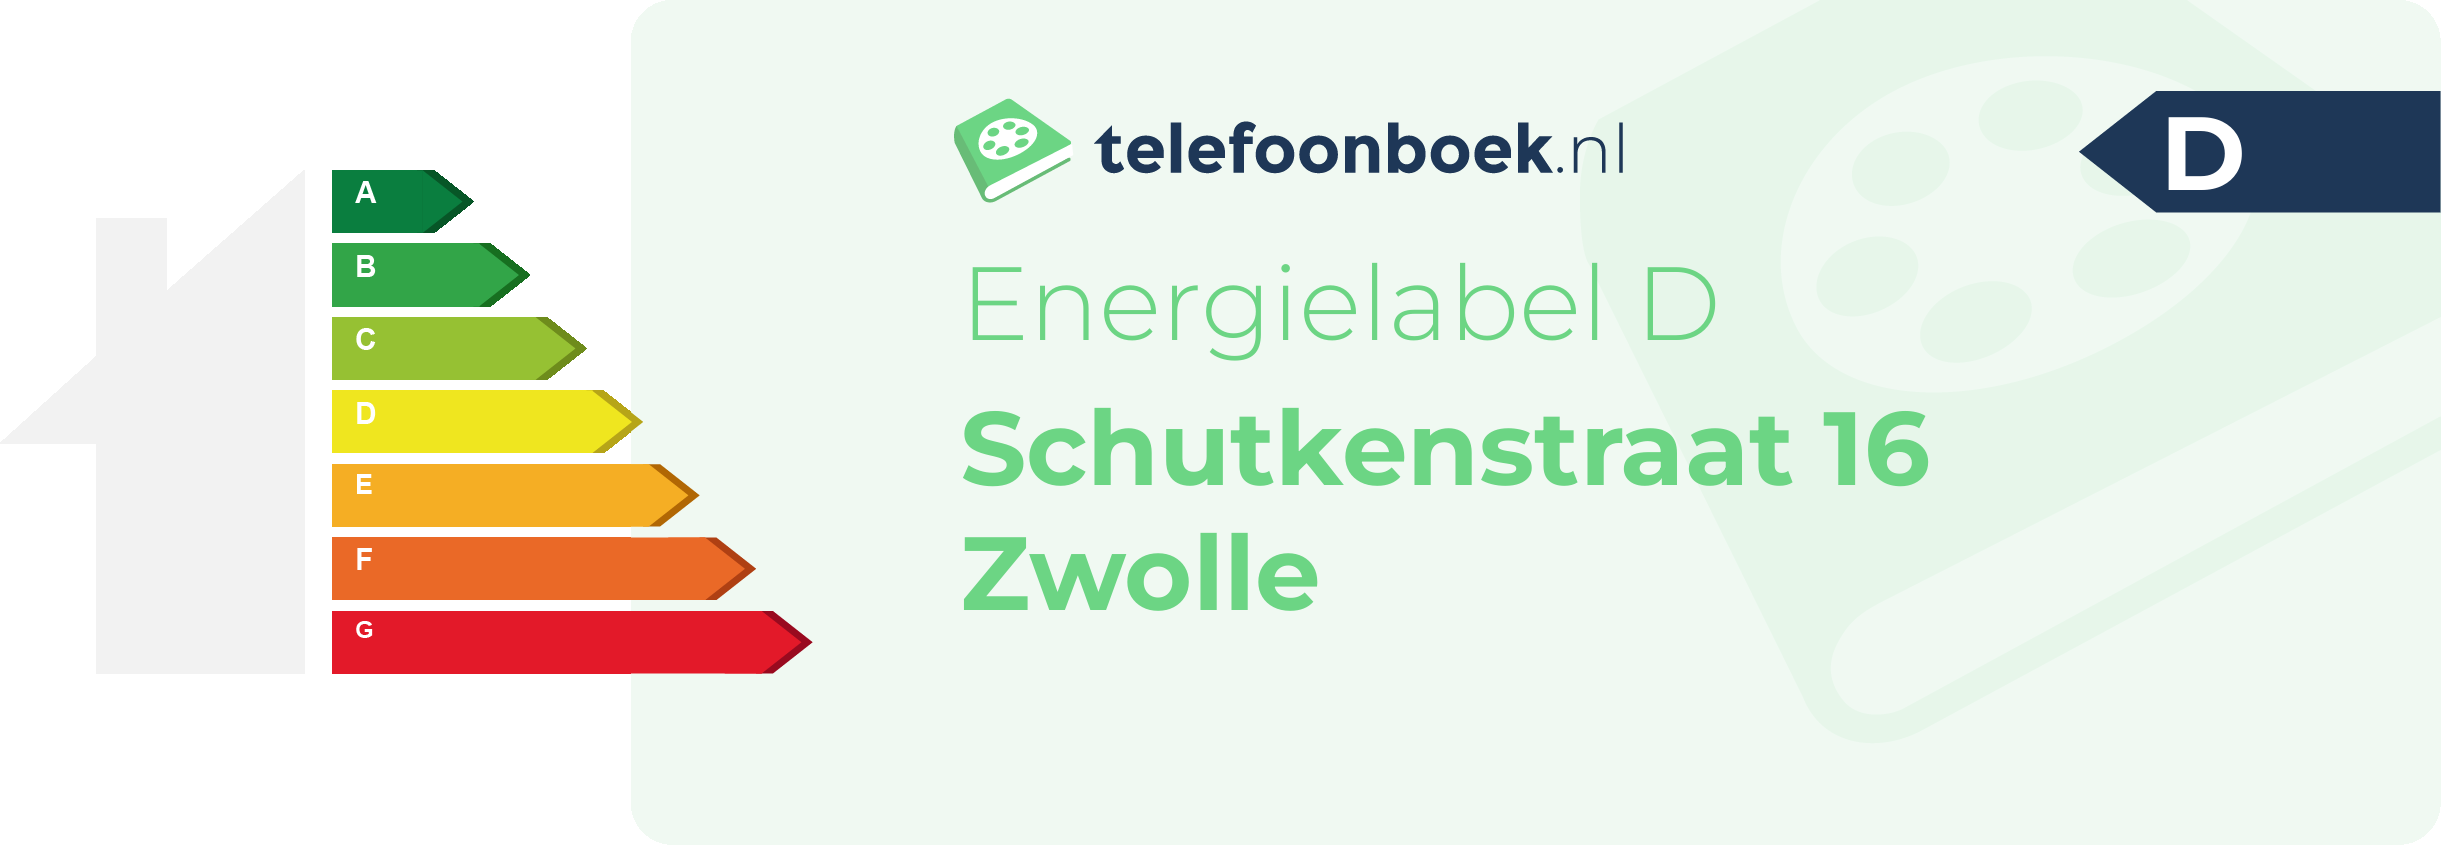 Energielabel Schutkenstraat 16 Zwolle